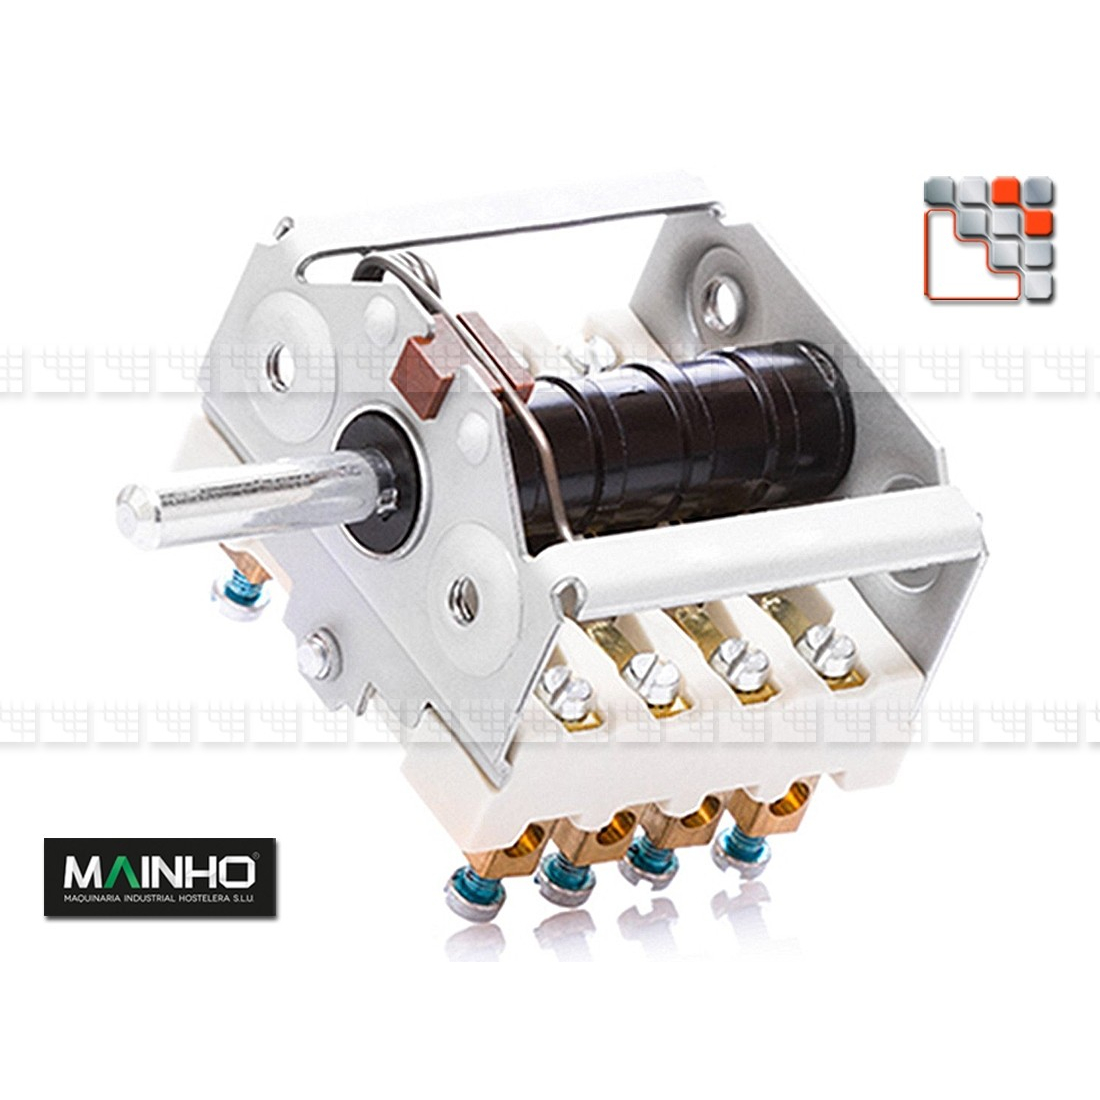 Electrical Switch & Terminal Block MAINHO M36-COM MAINHO SAV - Accessoires Electrical Spare Parts MAINHO